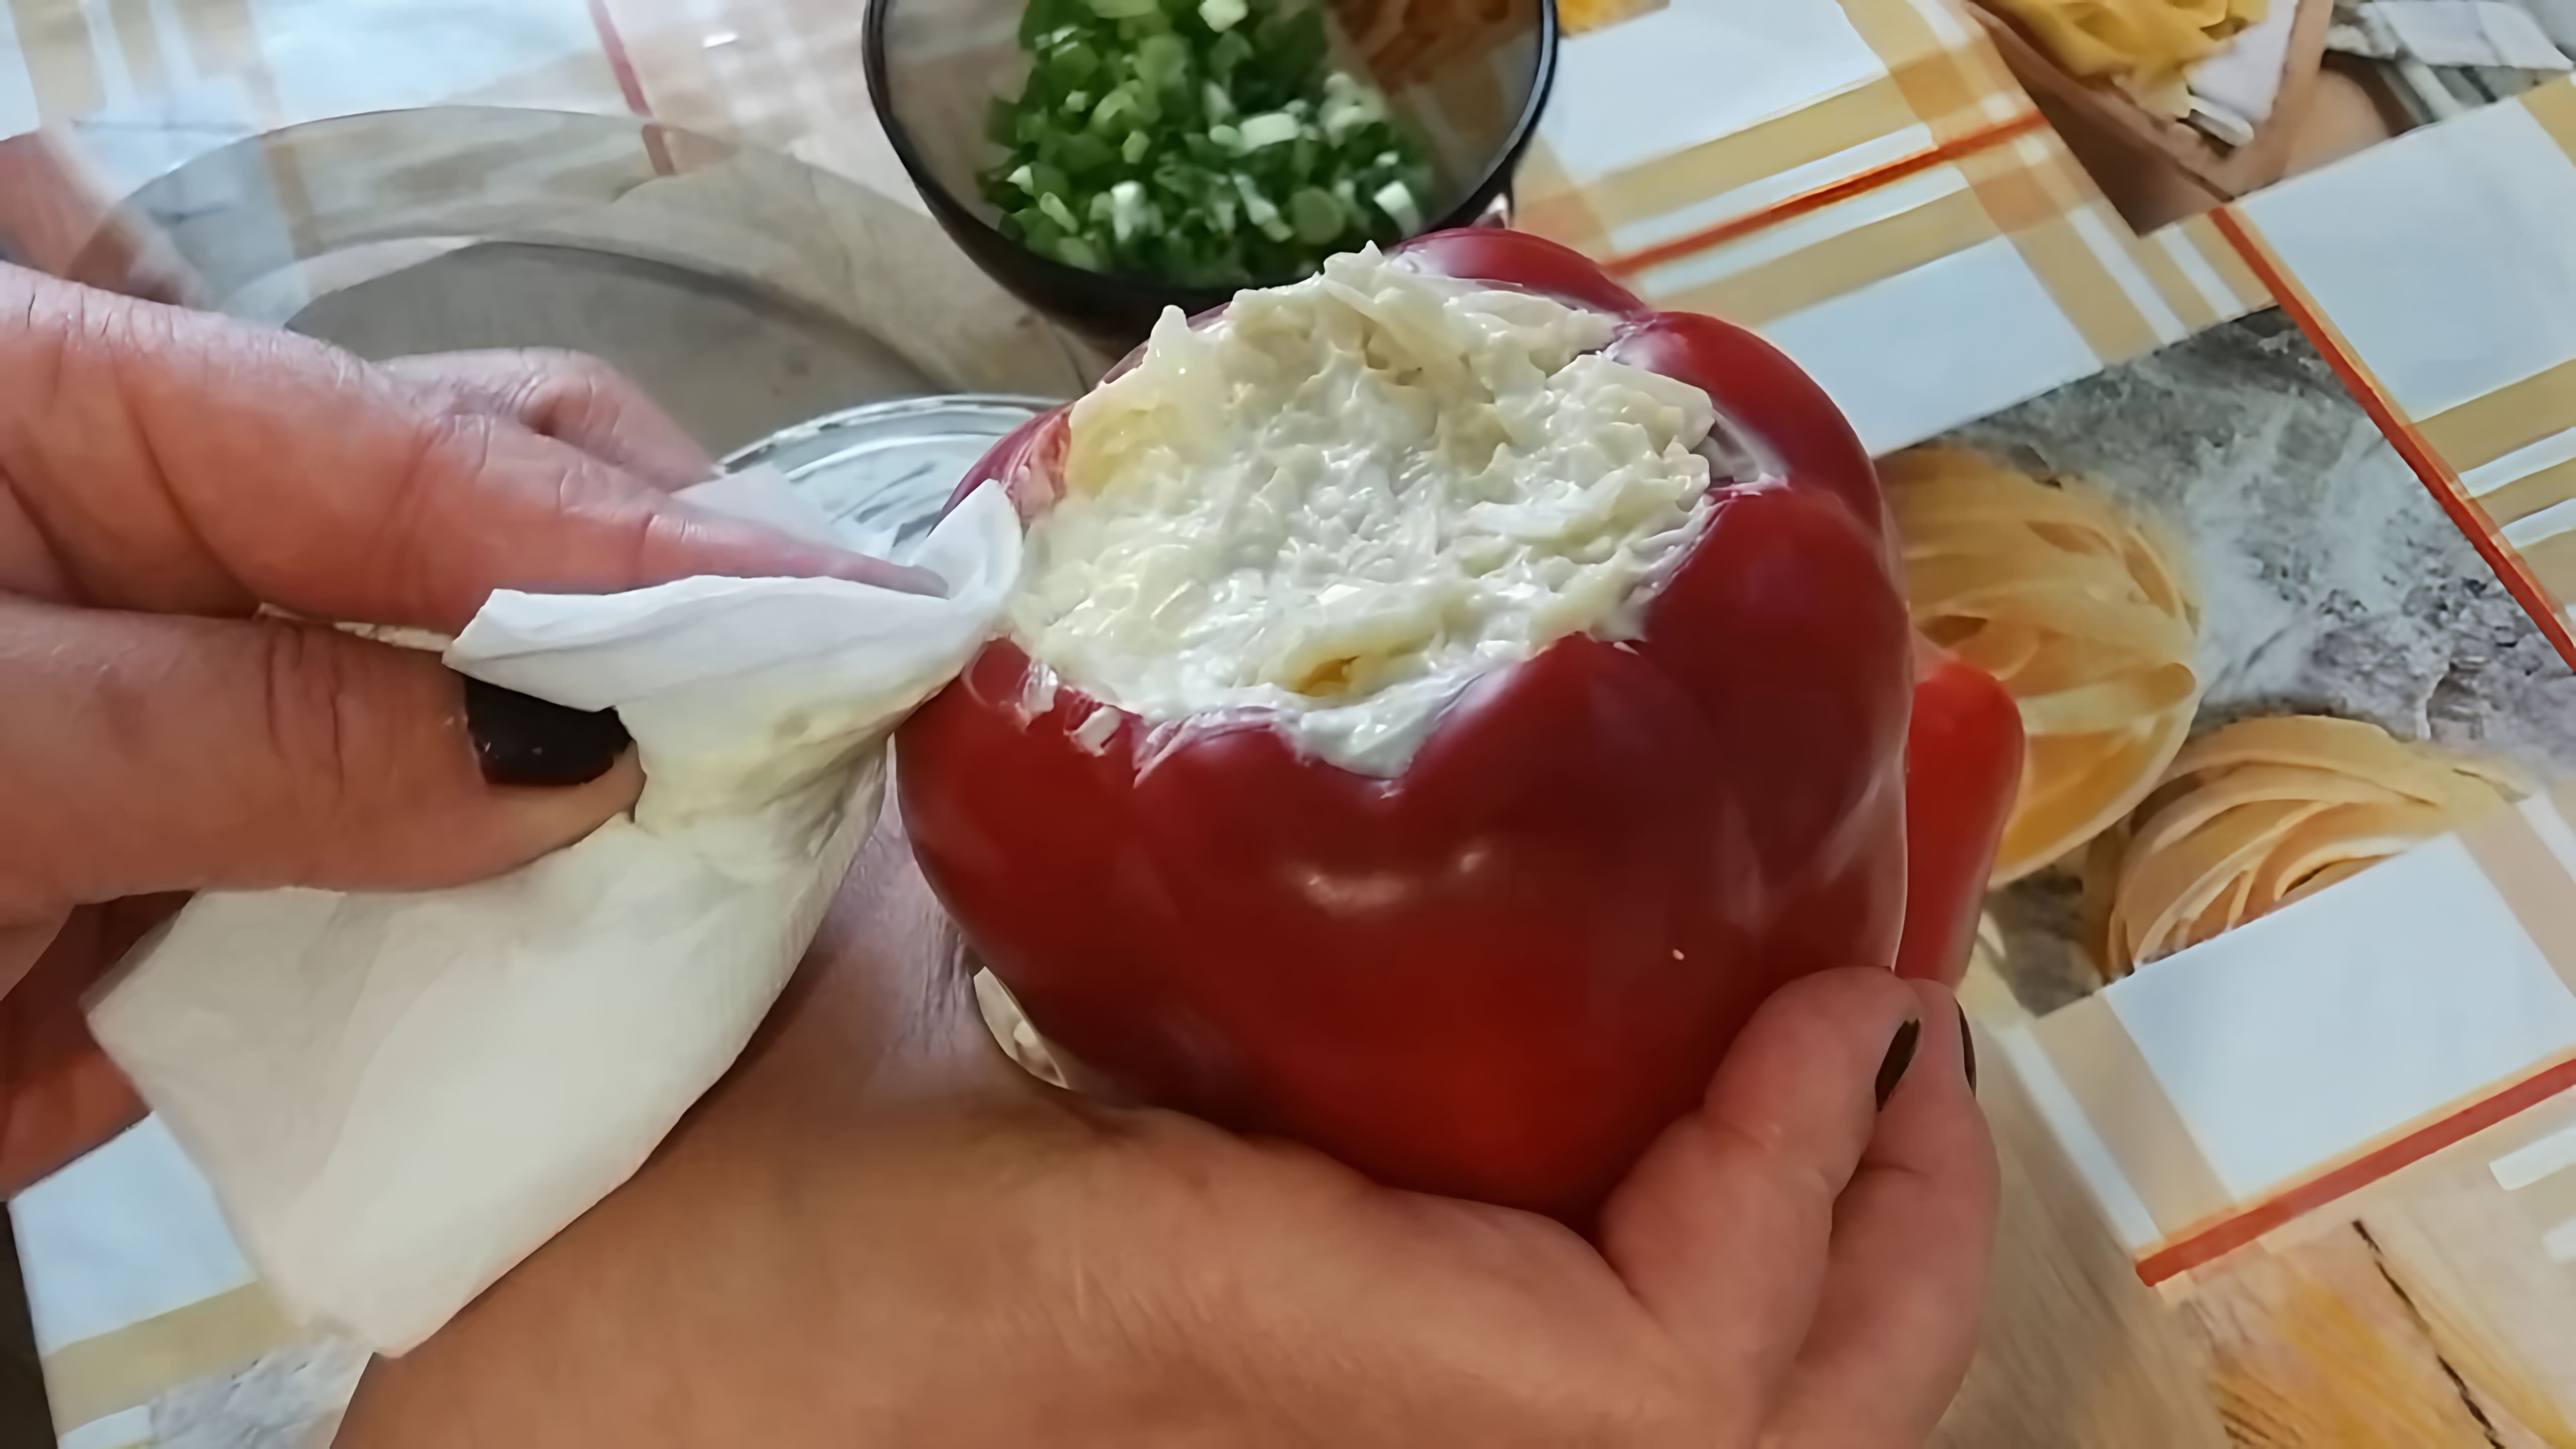 В этом видео демонстрируется процесс приготовления болгарского перца, фаршированного сыром и яйцом